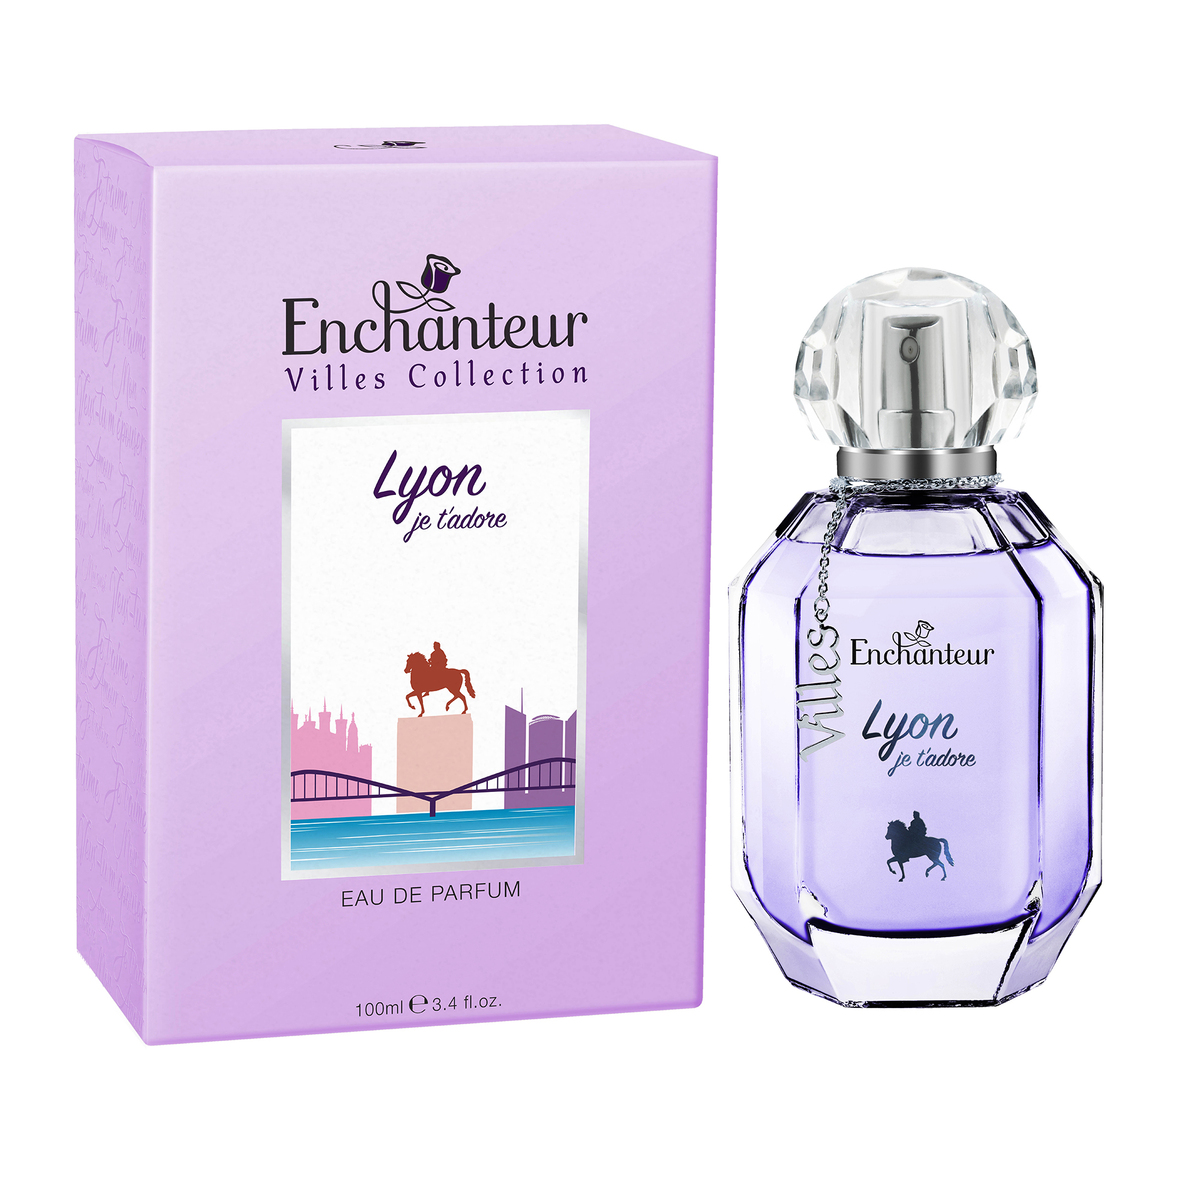 Enchanteur Villes Collection Eau De Parfum Lyon Je'tadore 100 ml